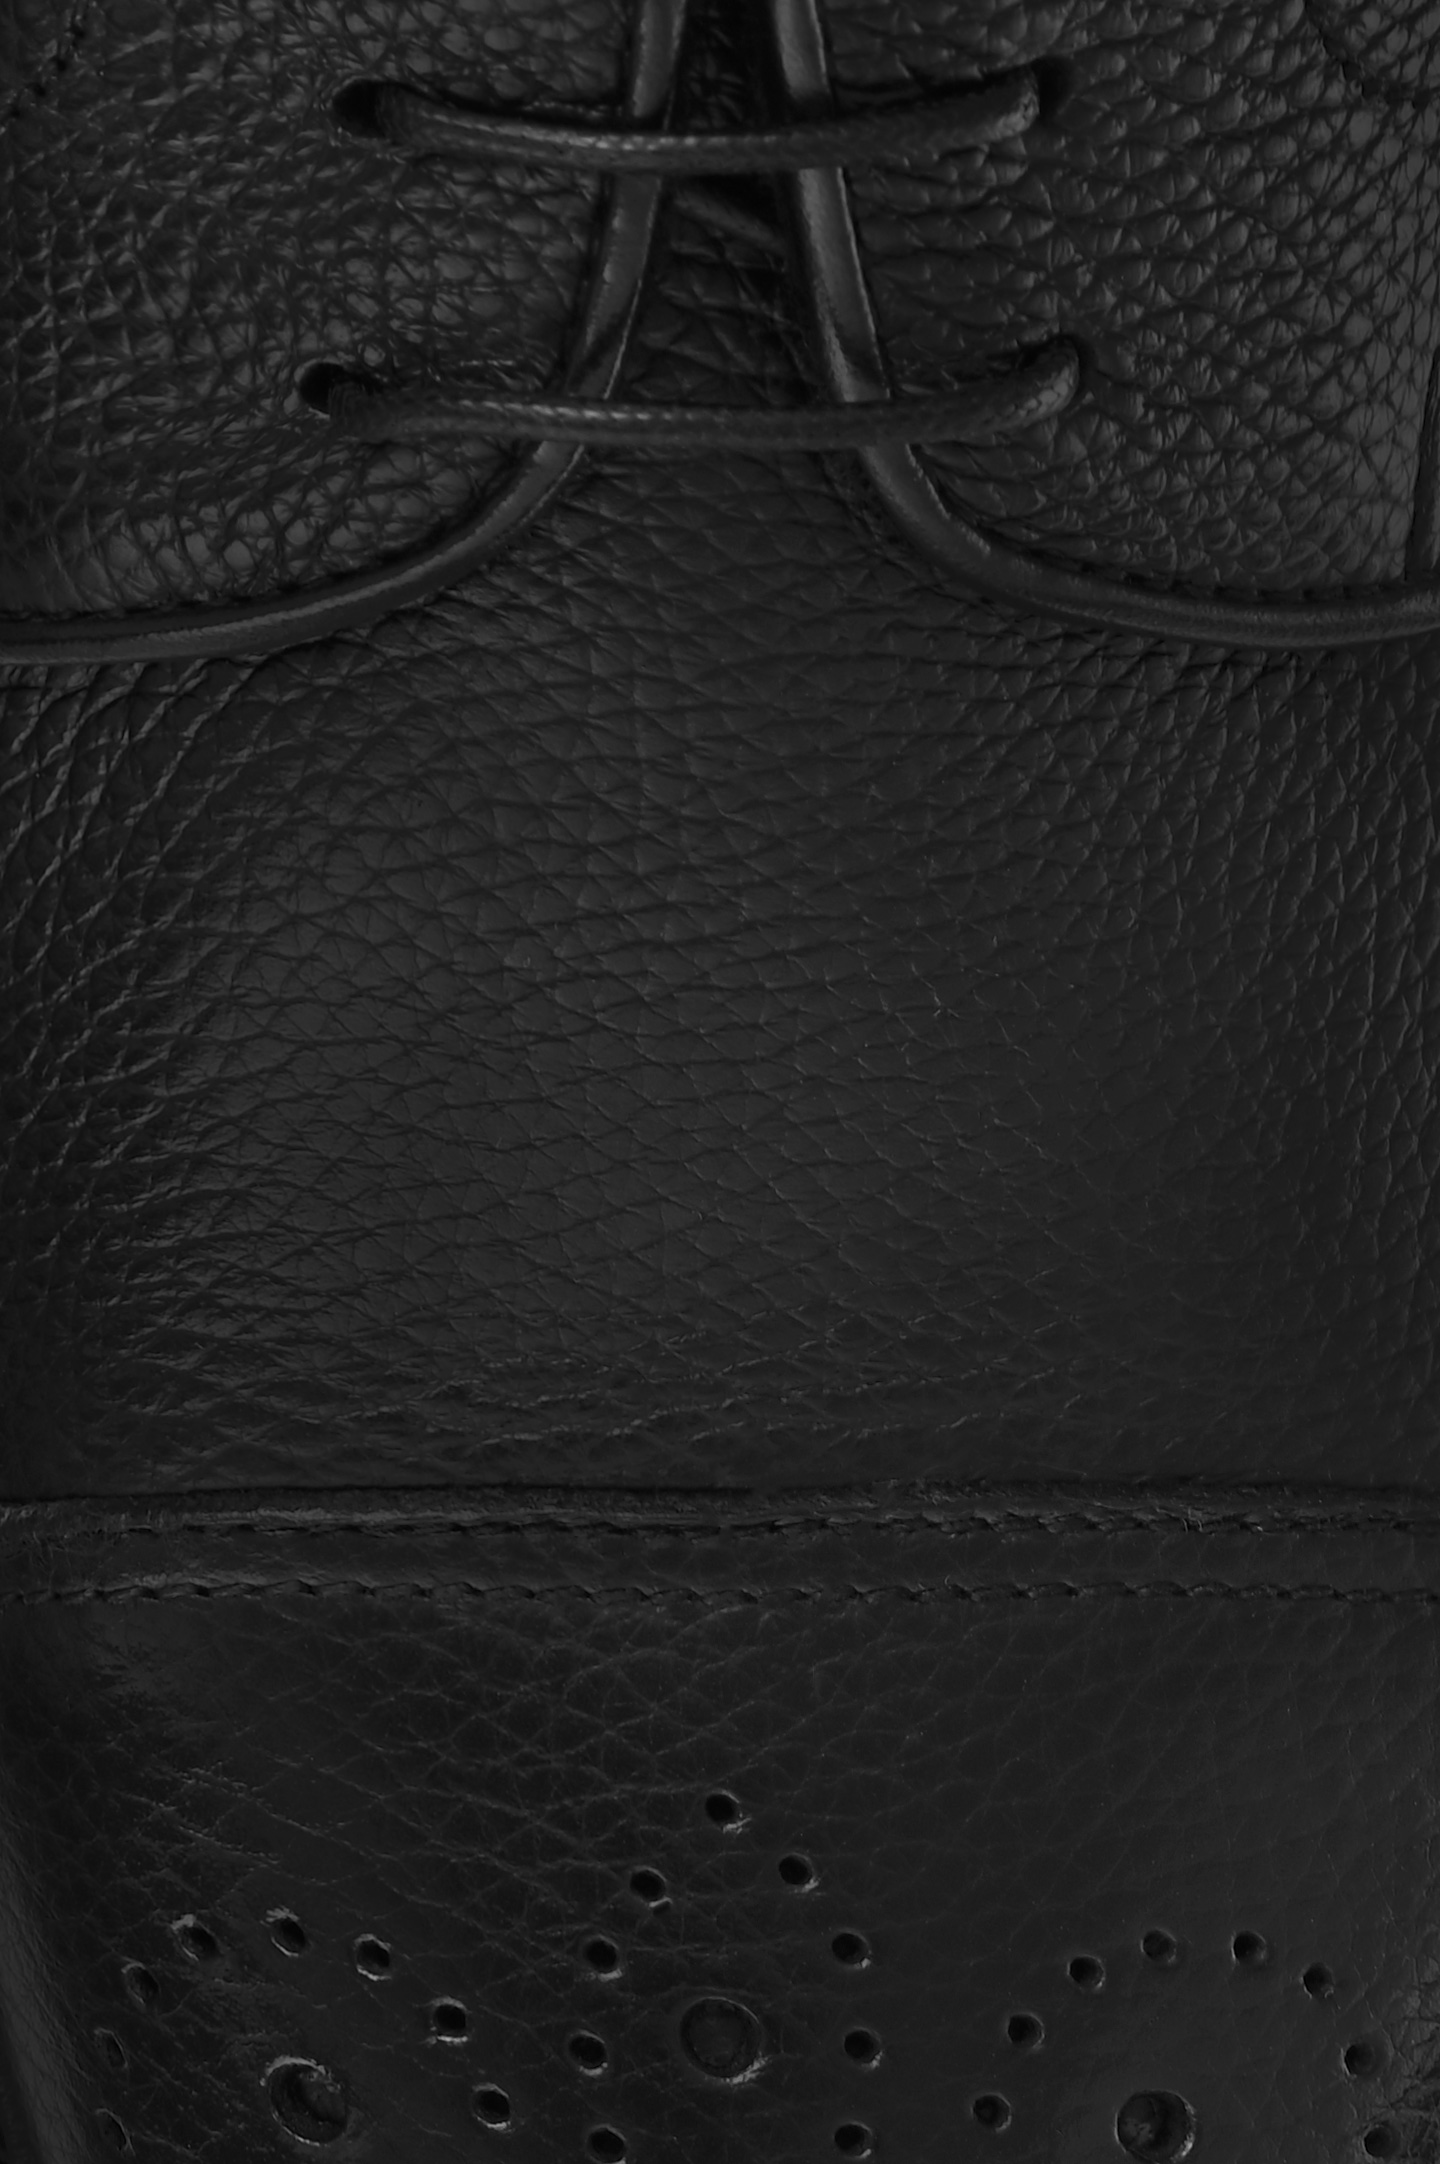 Туфли DOUCAL'S DU2900VEROUT019, цвет: Черный, Мужской